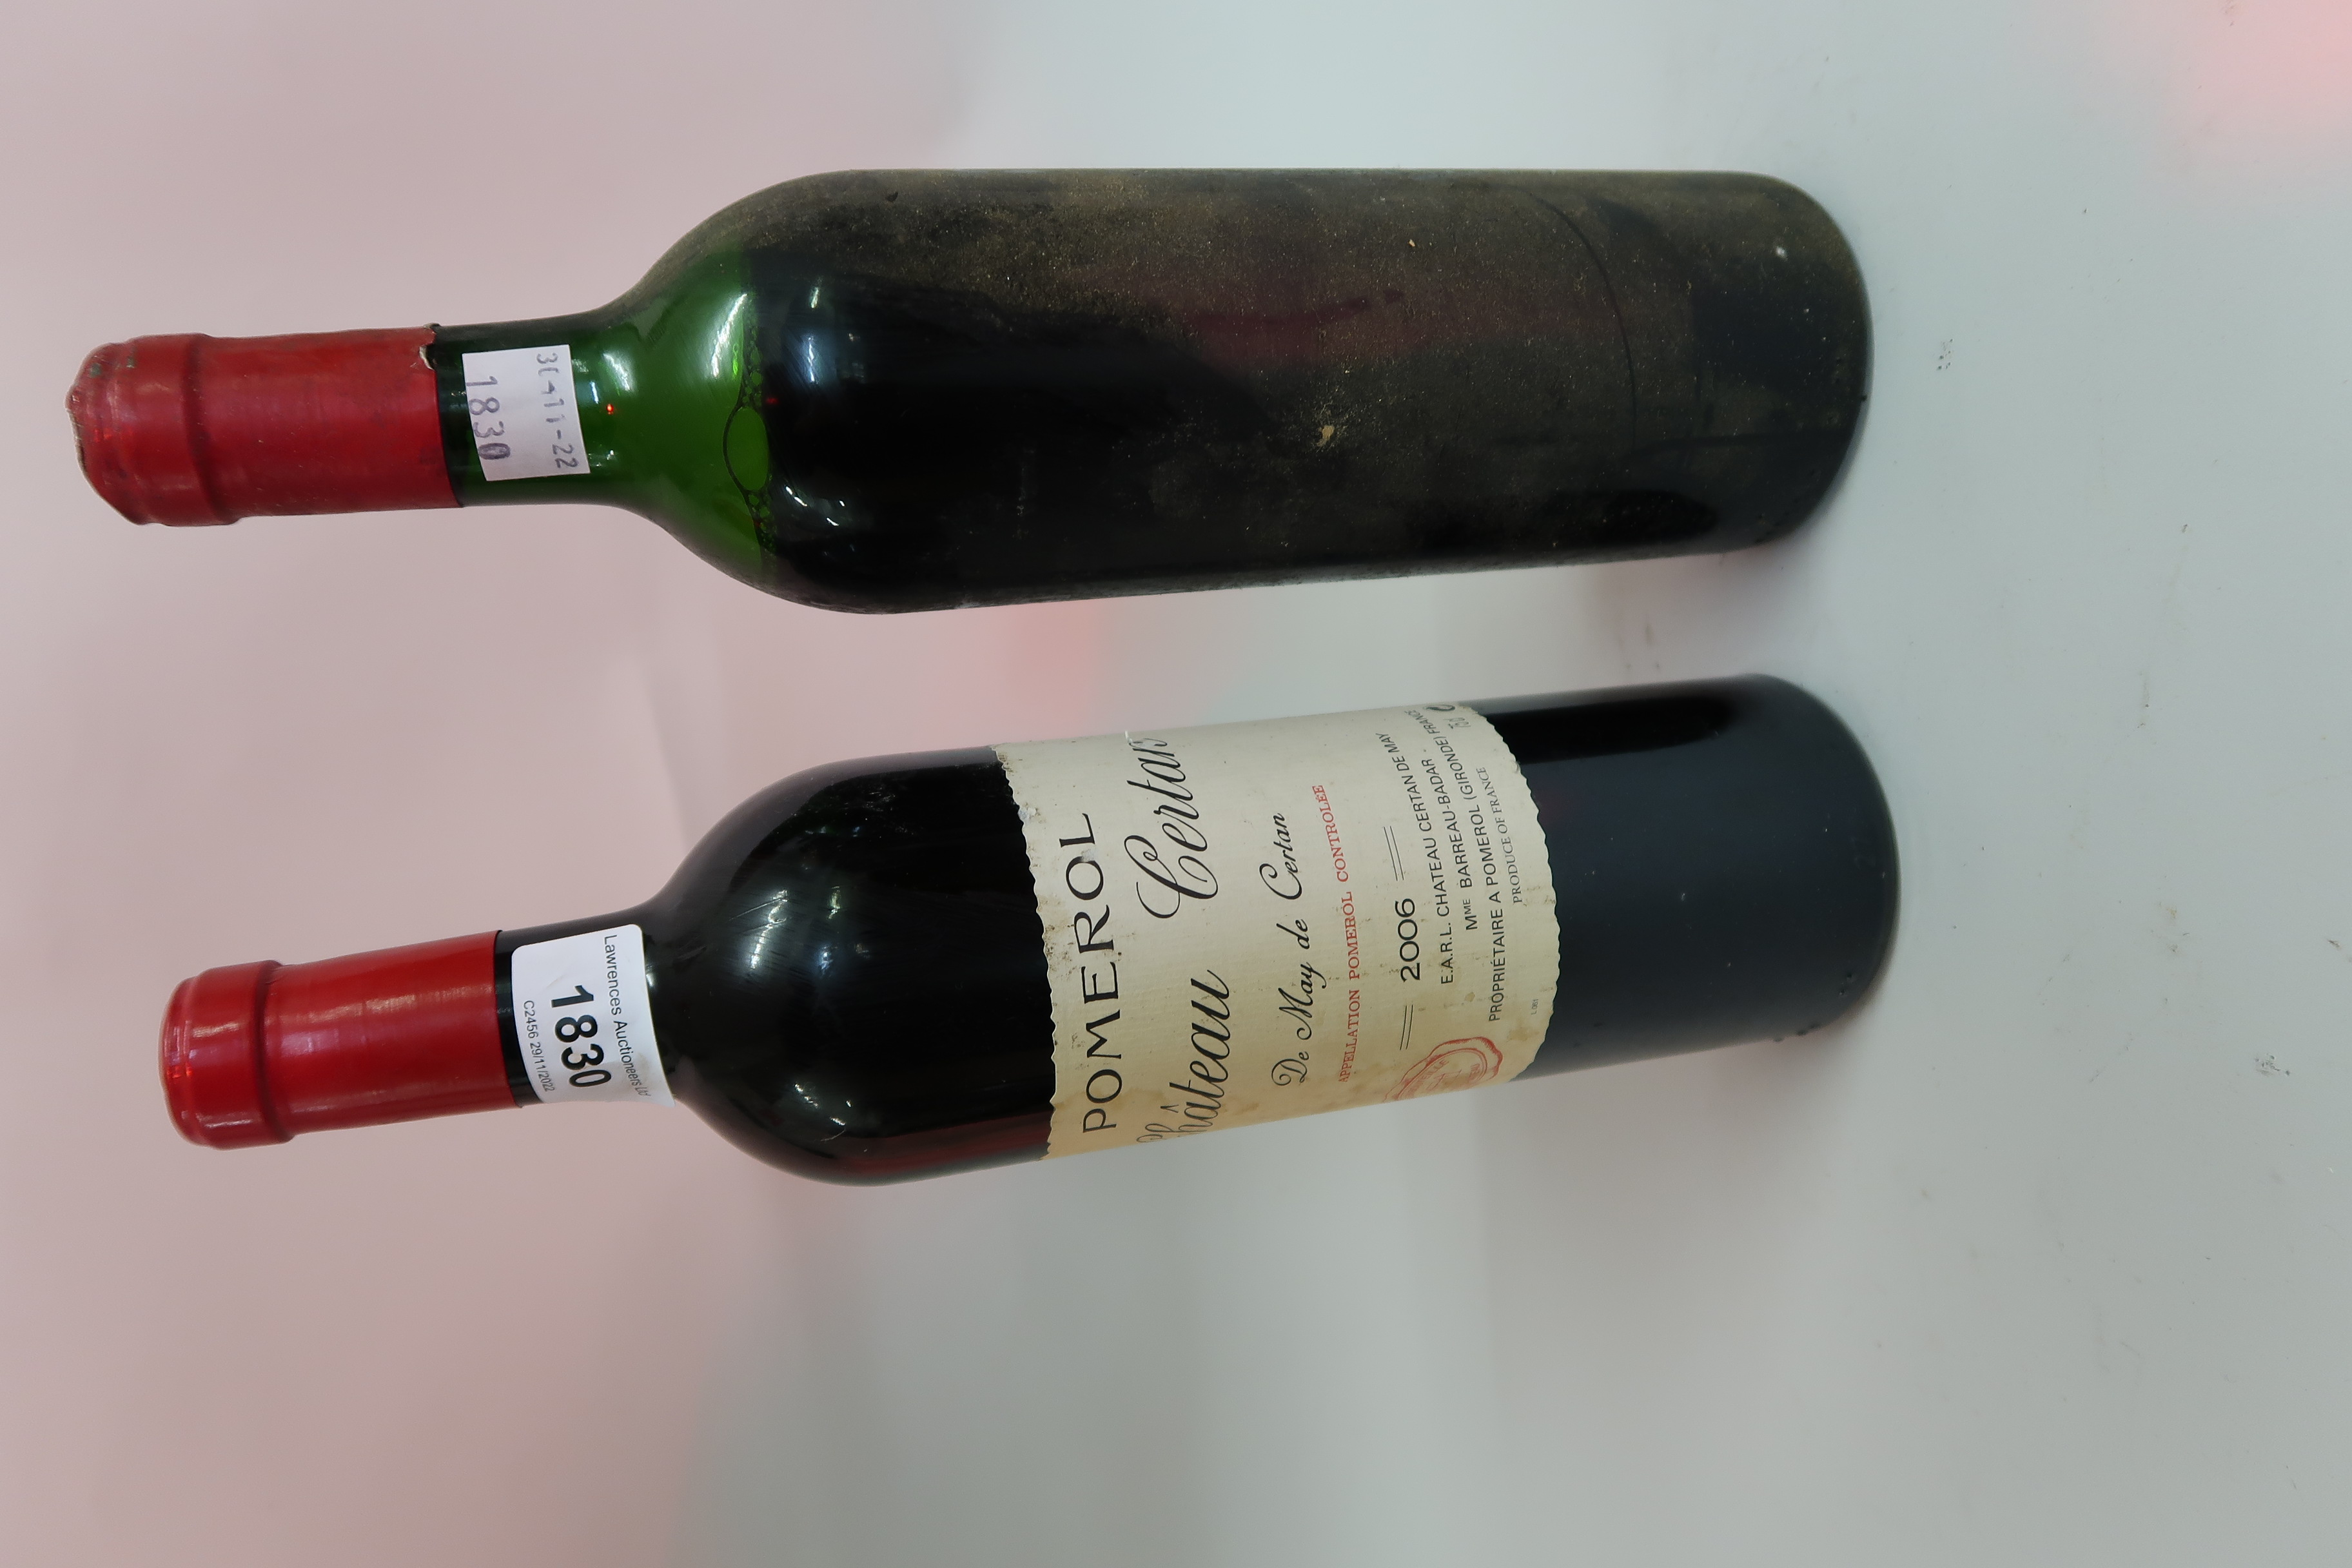 One bottle Chateau Certan ' De May de Certan ', Pomerol 2006, and one bottle Chateau Certan ' De May